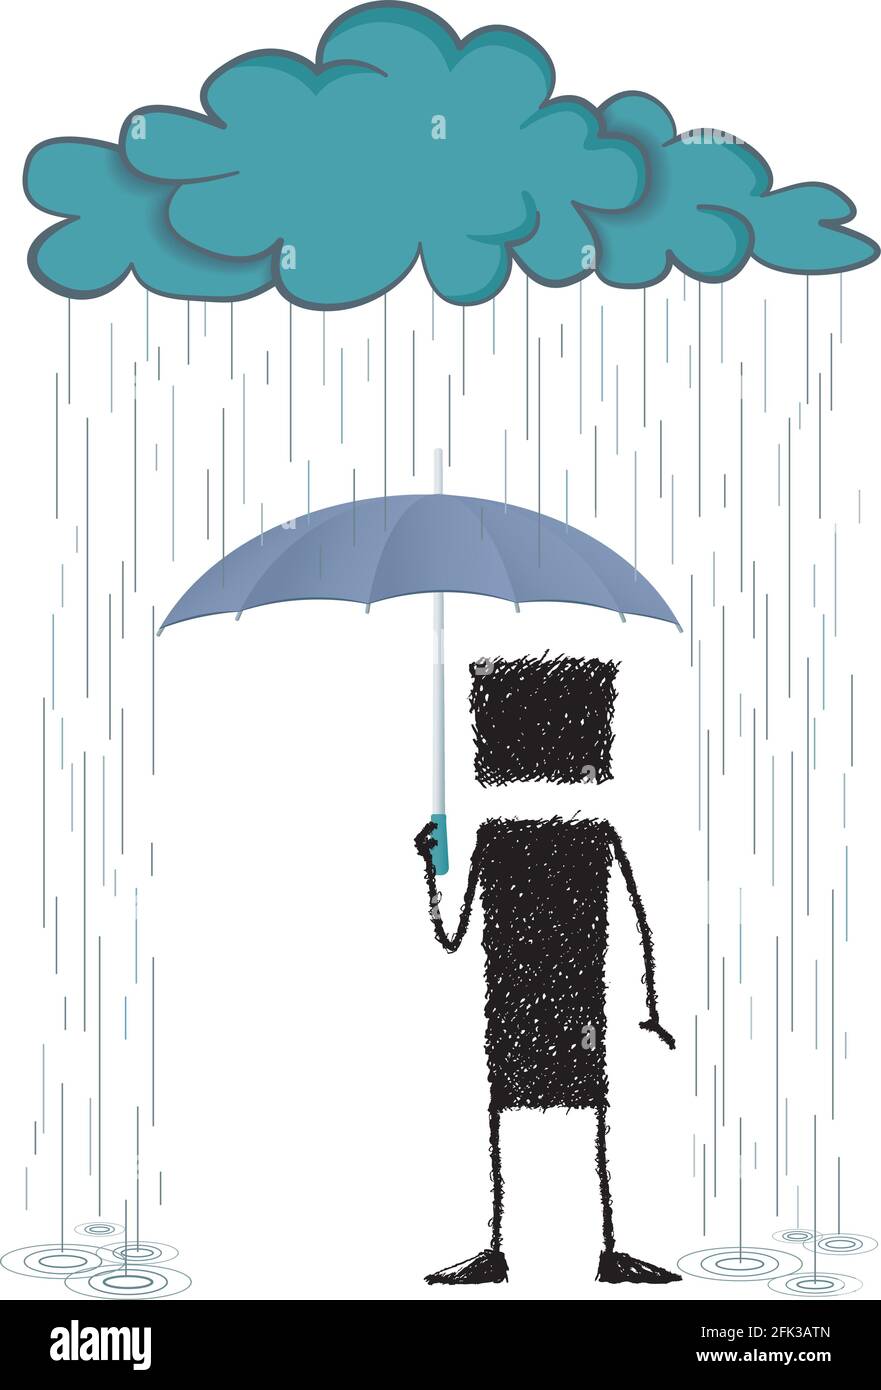 Illustrazione di un bastone in piedi, protetto dalla pioggia da un ombrello. Un'immagine che mostra che è possibile superare le avversità. Illustrazione Vettoriale